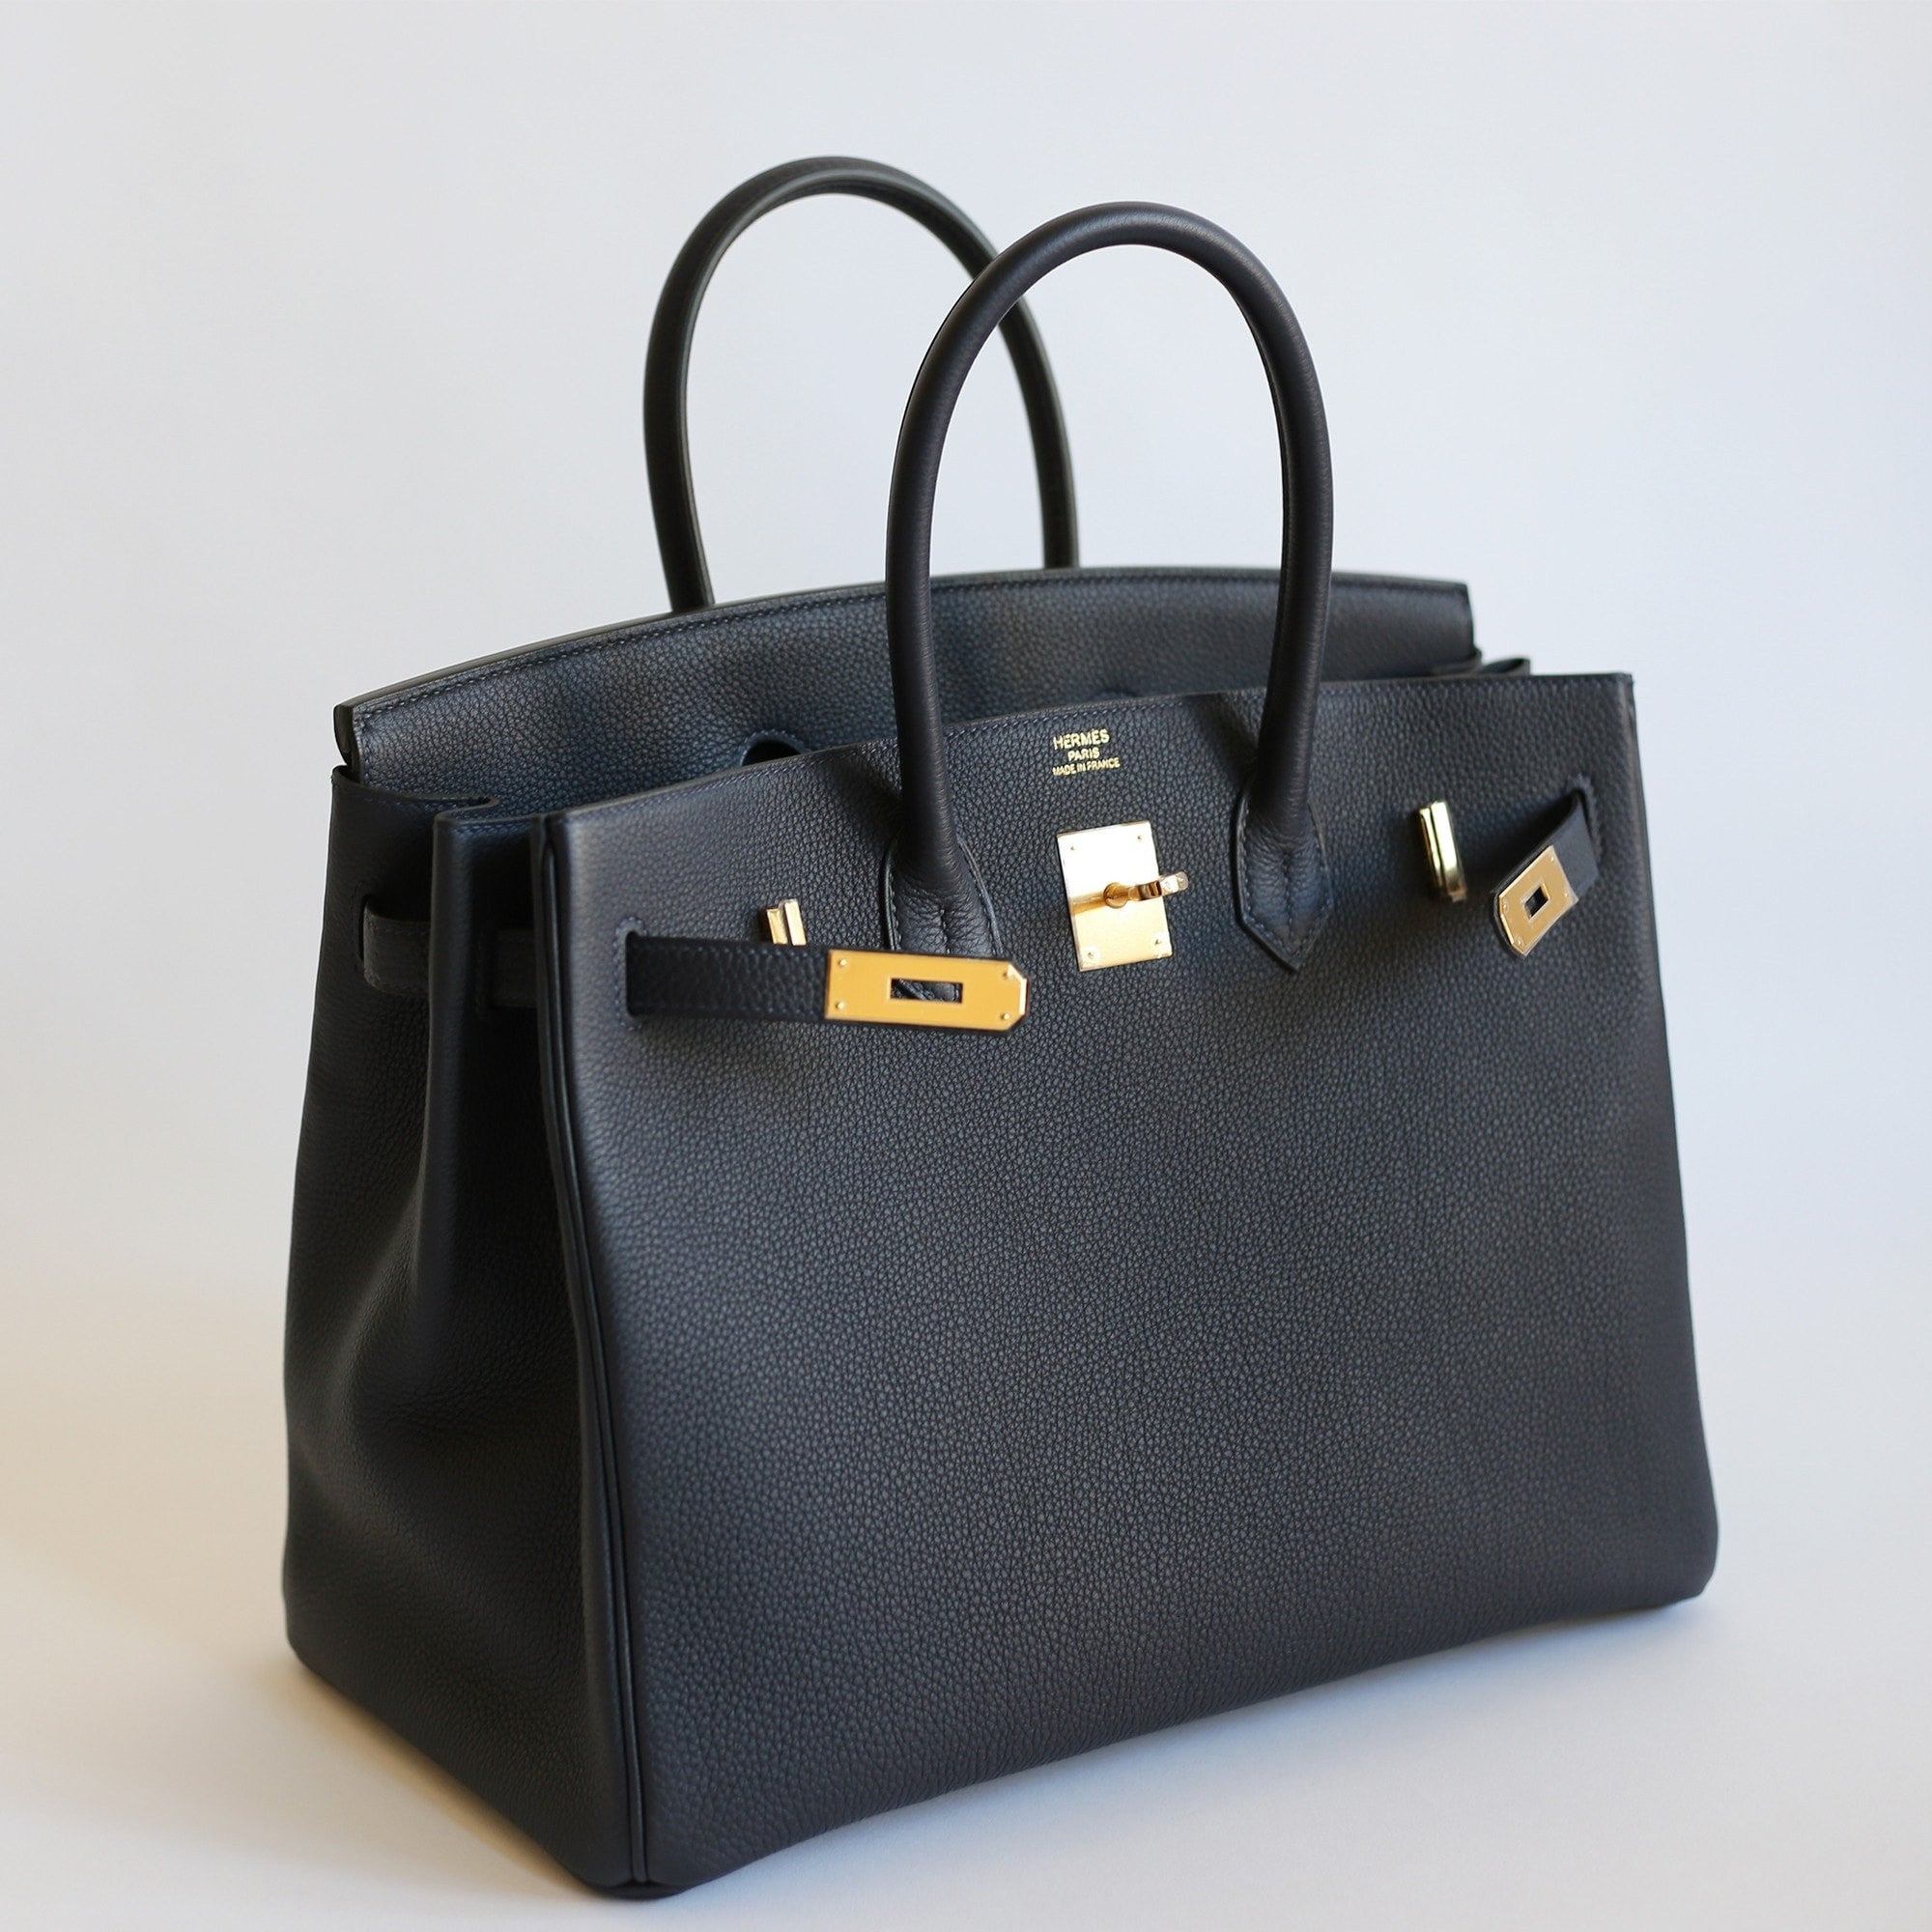 Hermes Birkin bag 30 Black Togo leather Gold hardware